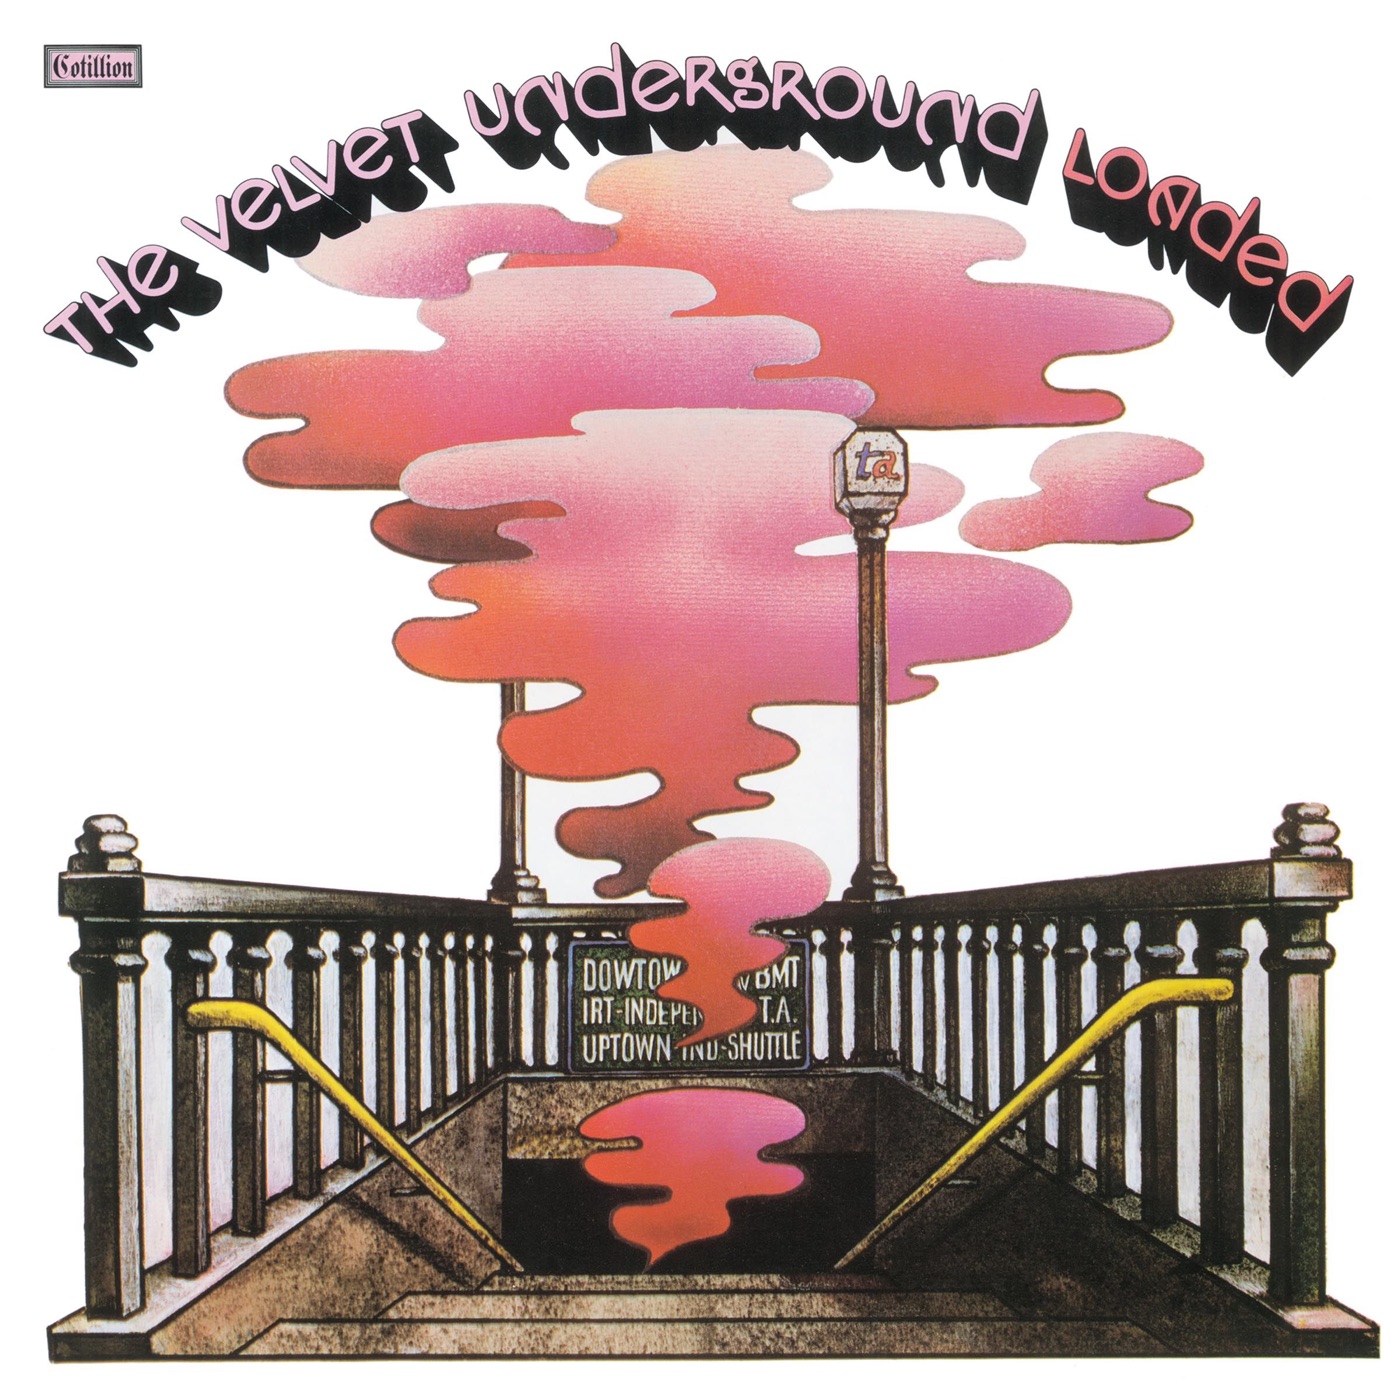 Loaded by The Velvet Underground